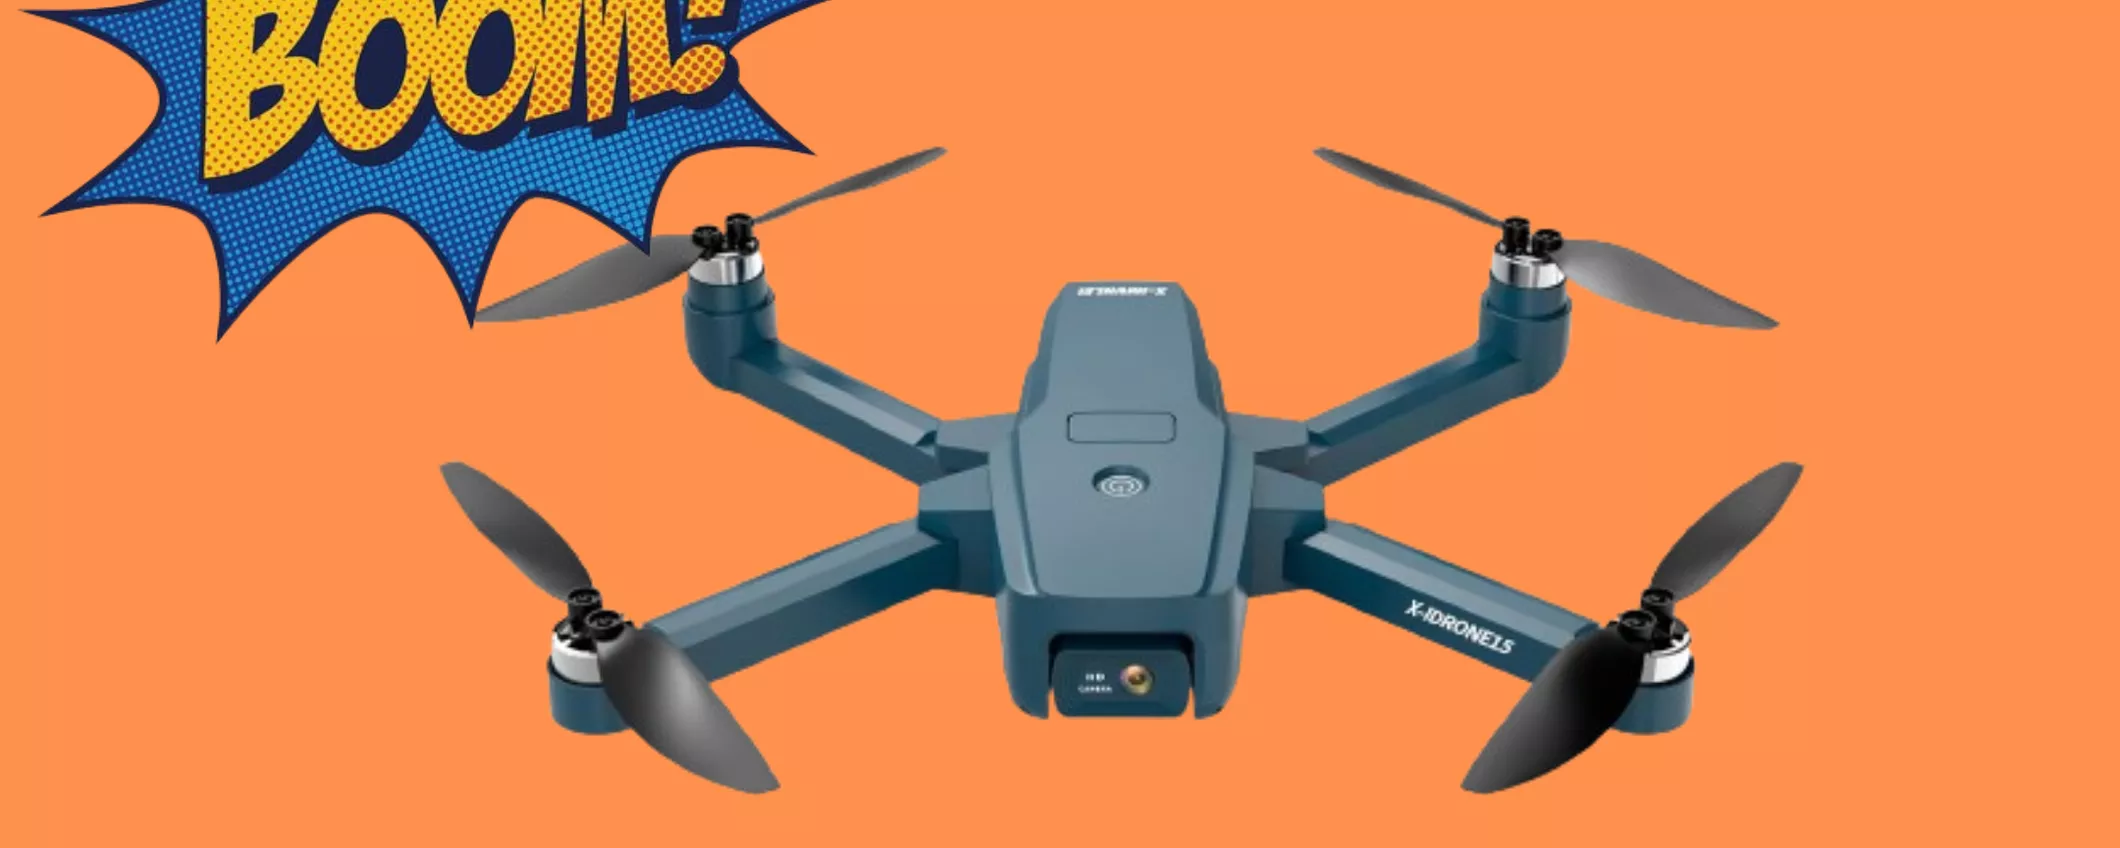 IMMORTALA le tue avventure con il Drone per adulti SCONTATISSIMO AL 40%